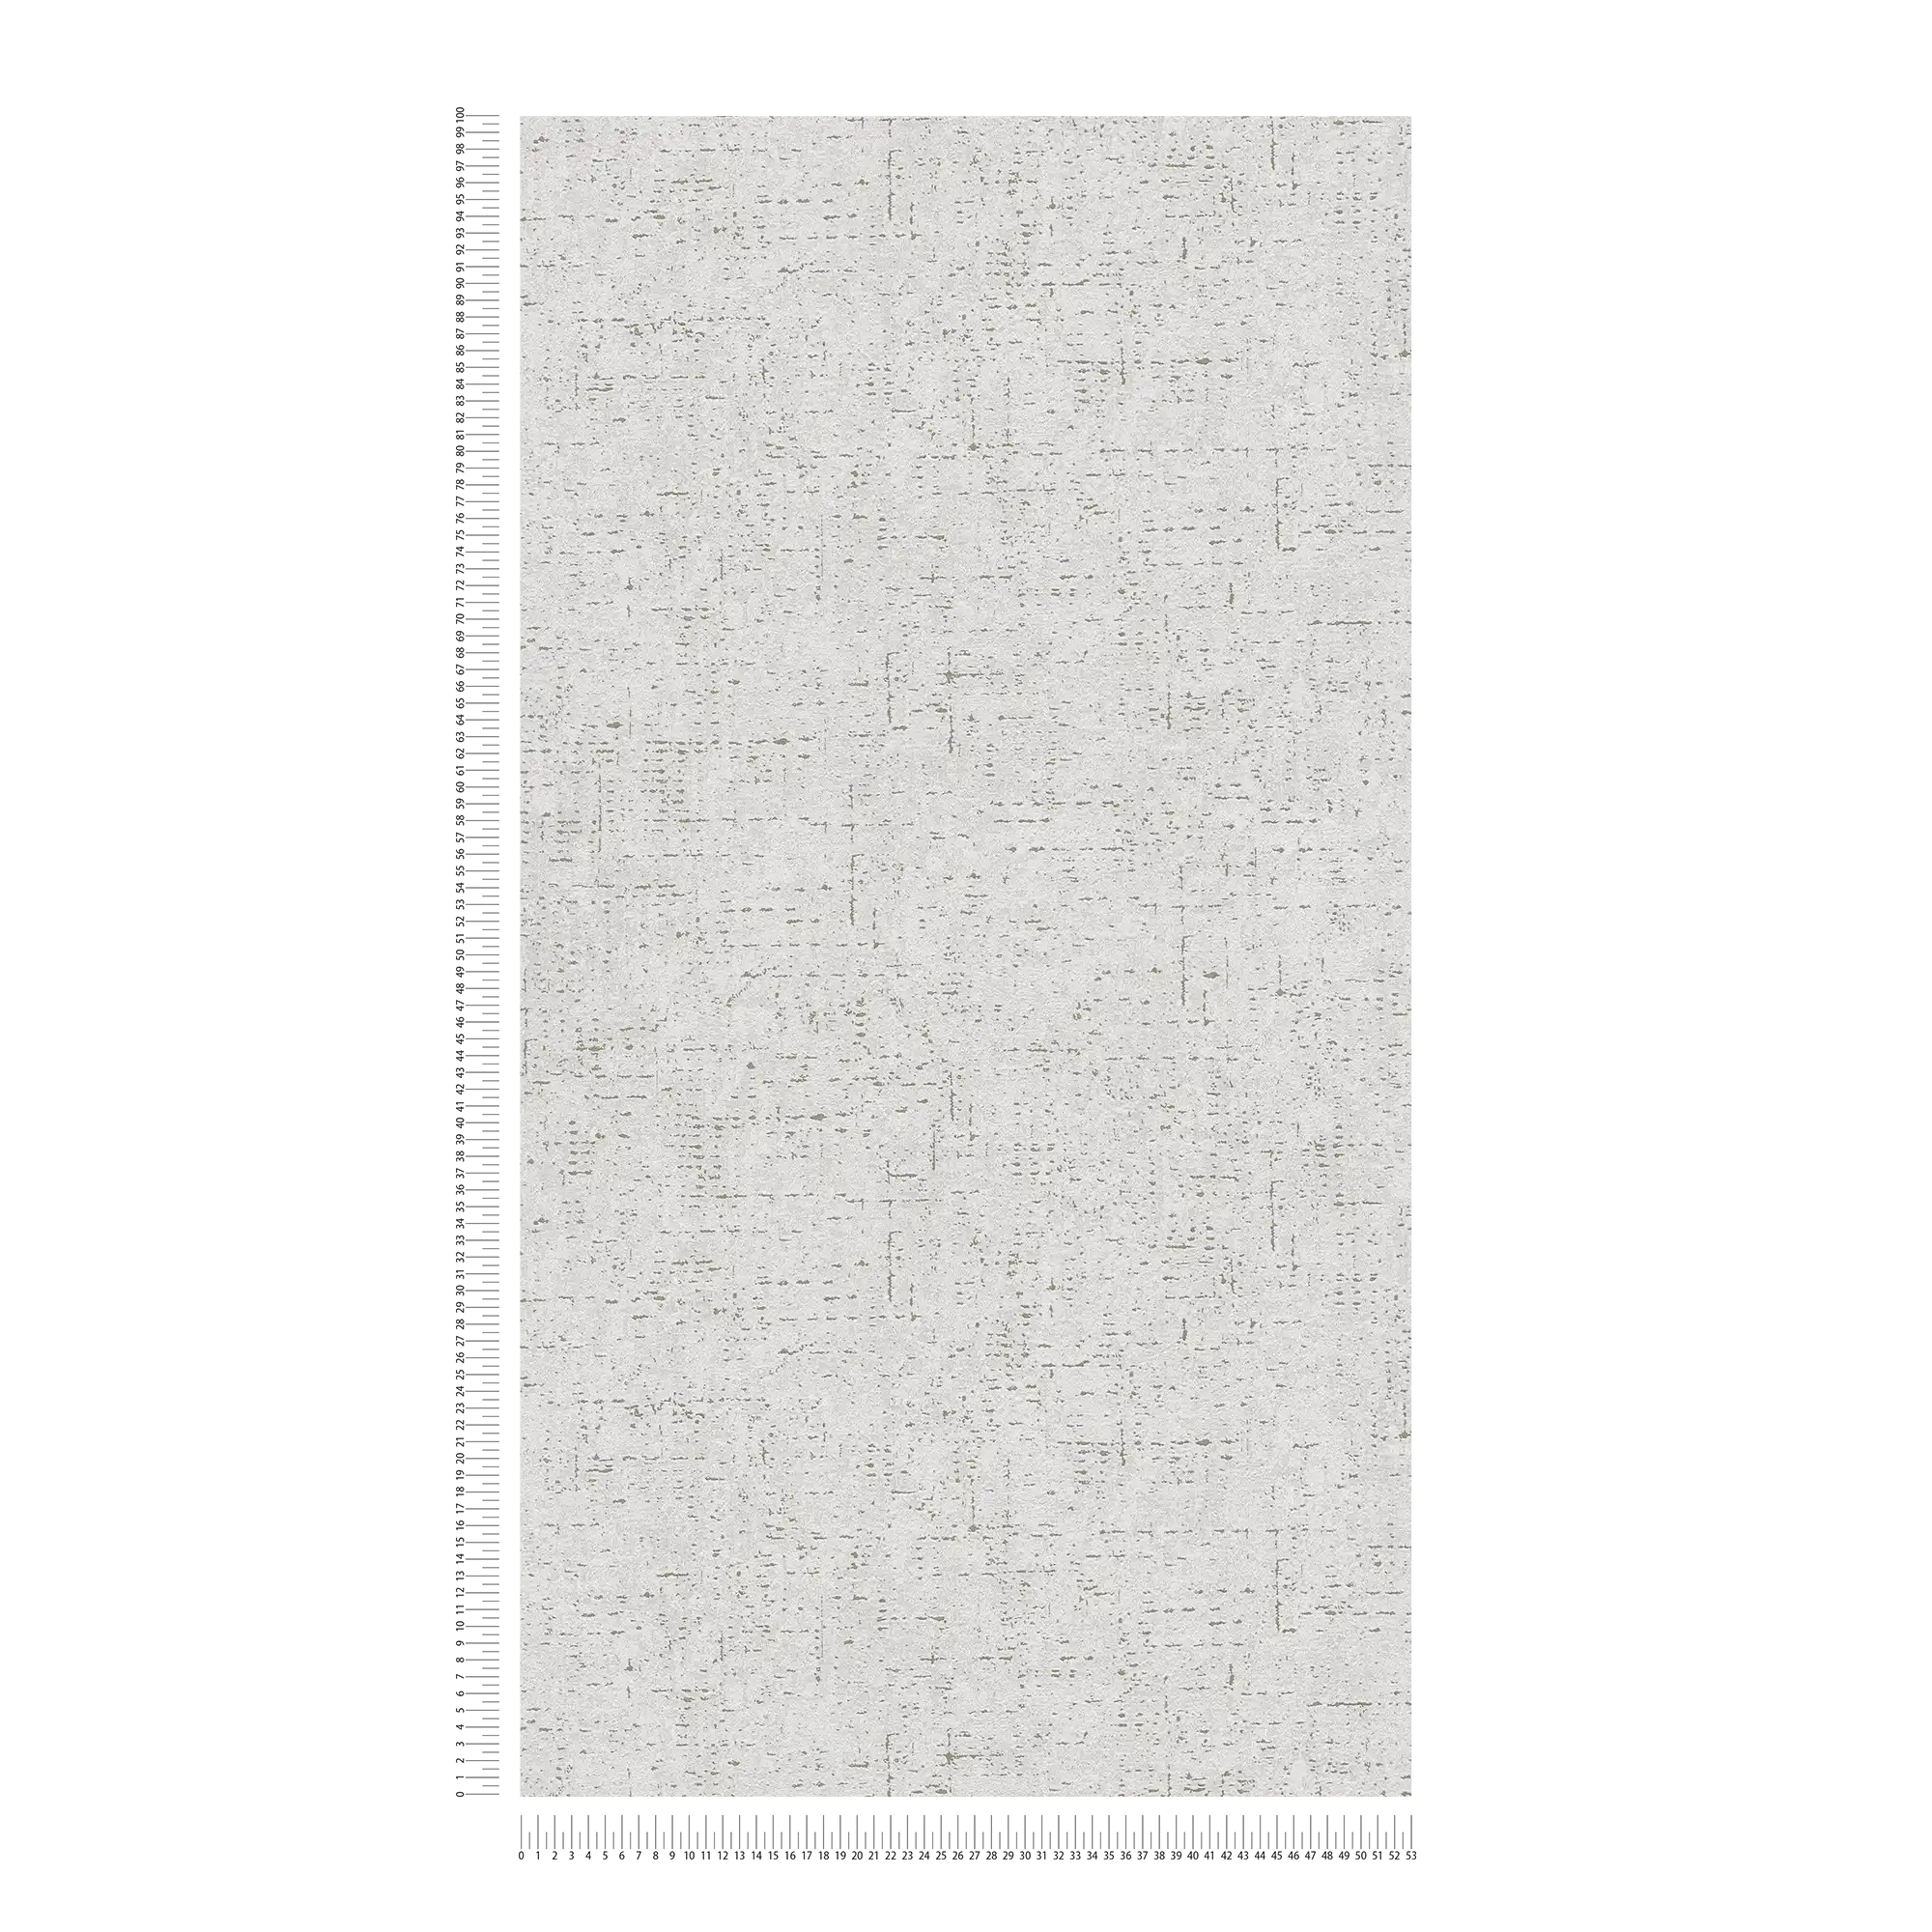             Eenheidsbehang met textuurpatroon in pleisterlook - grijs
        